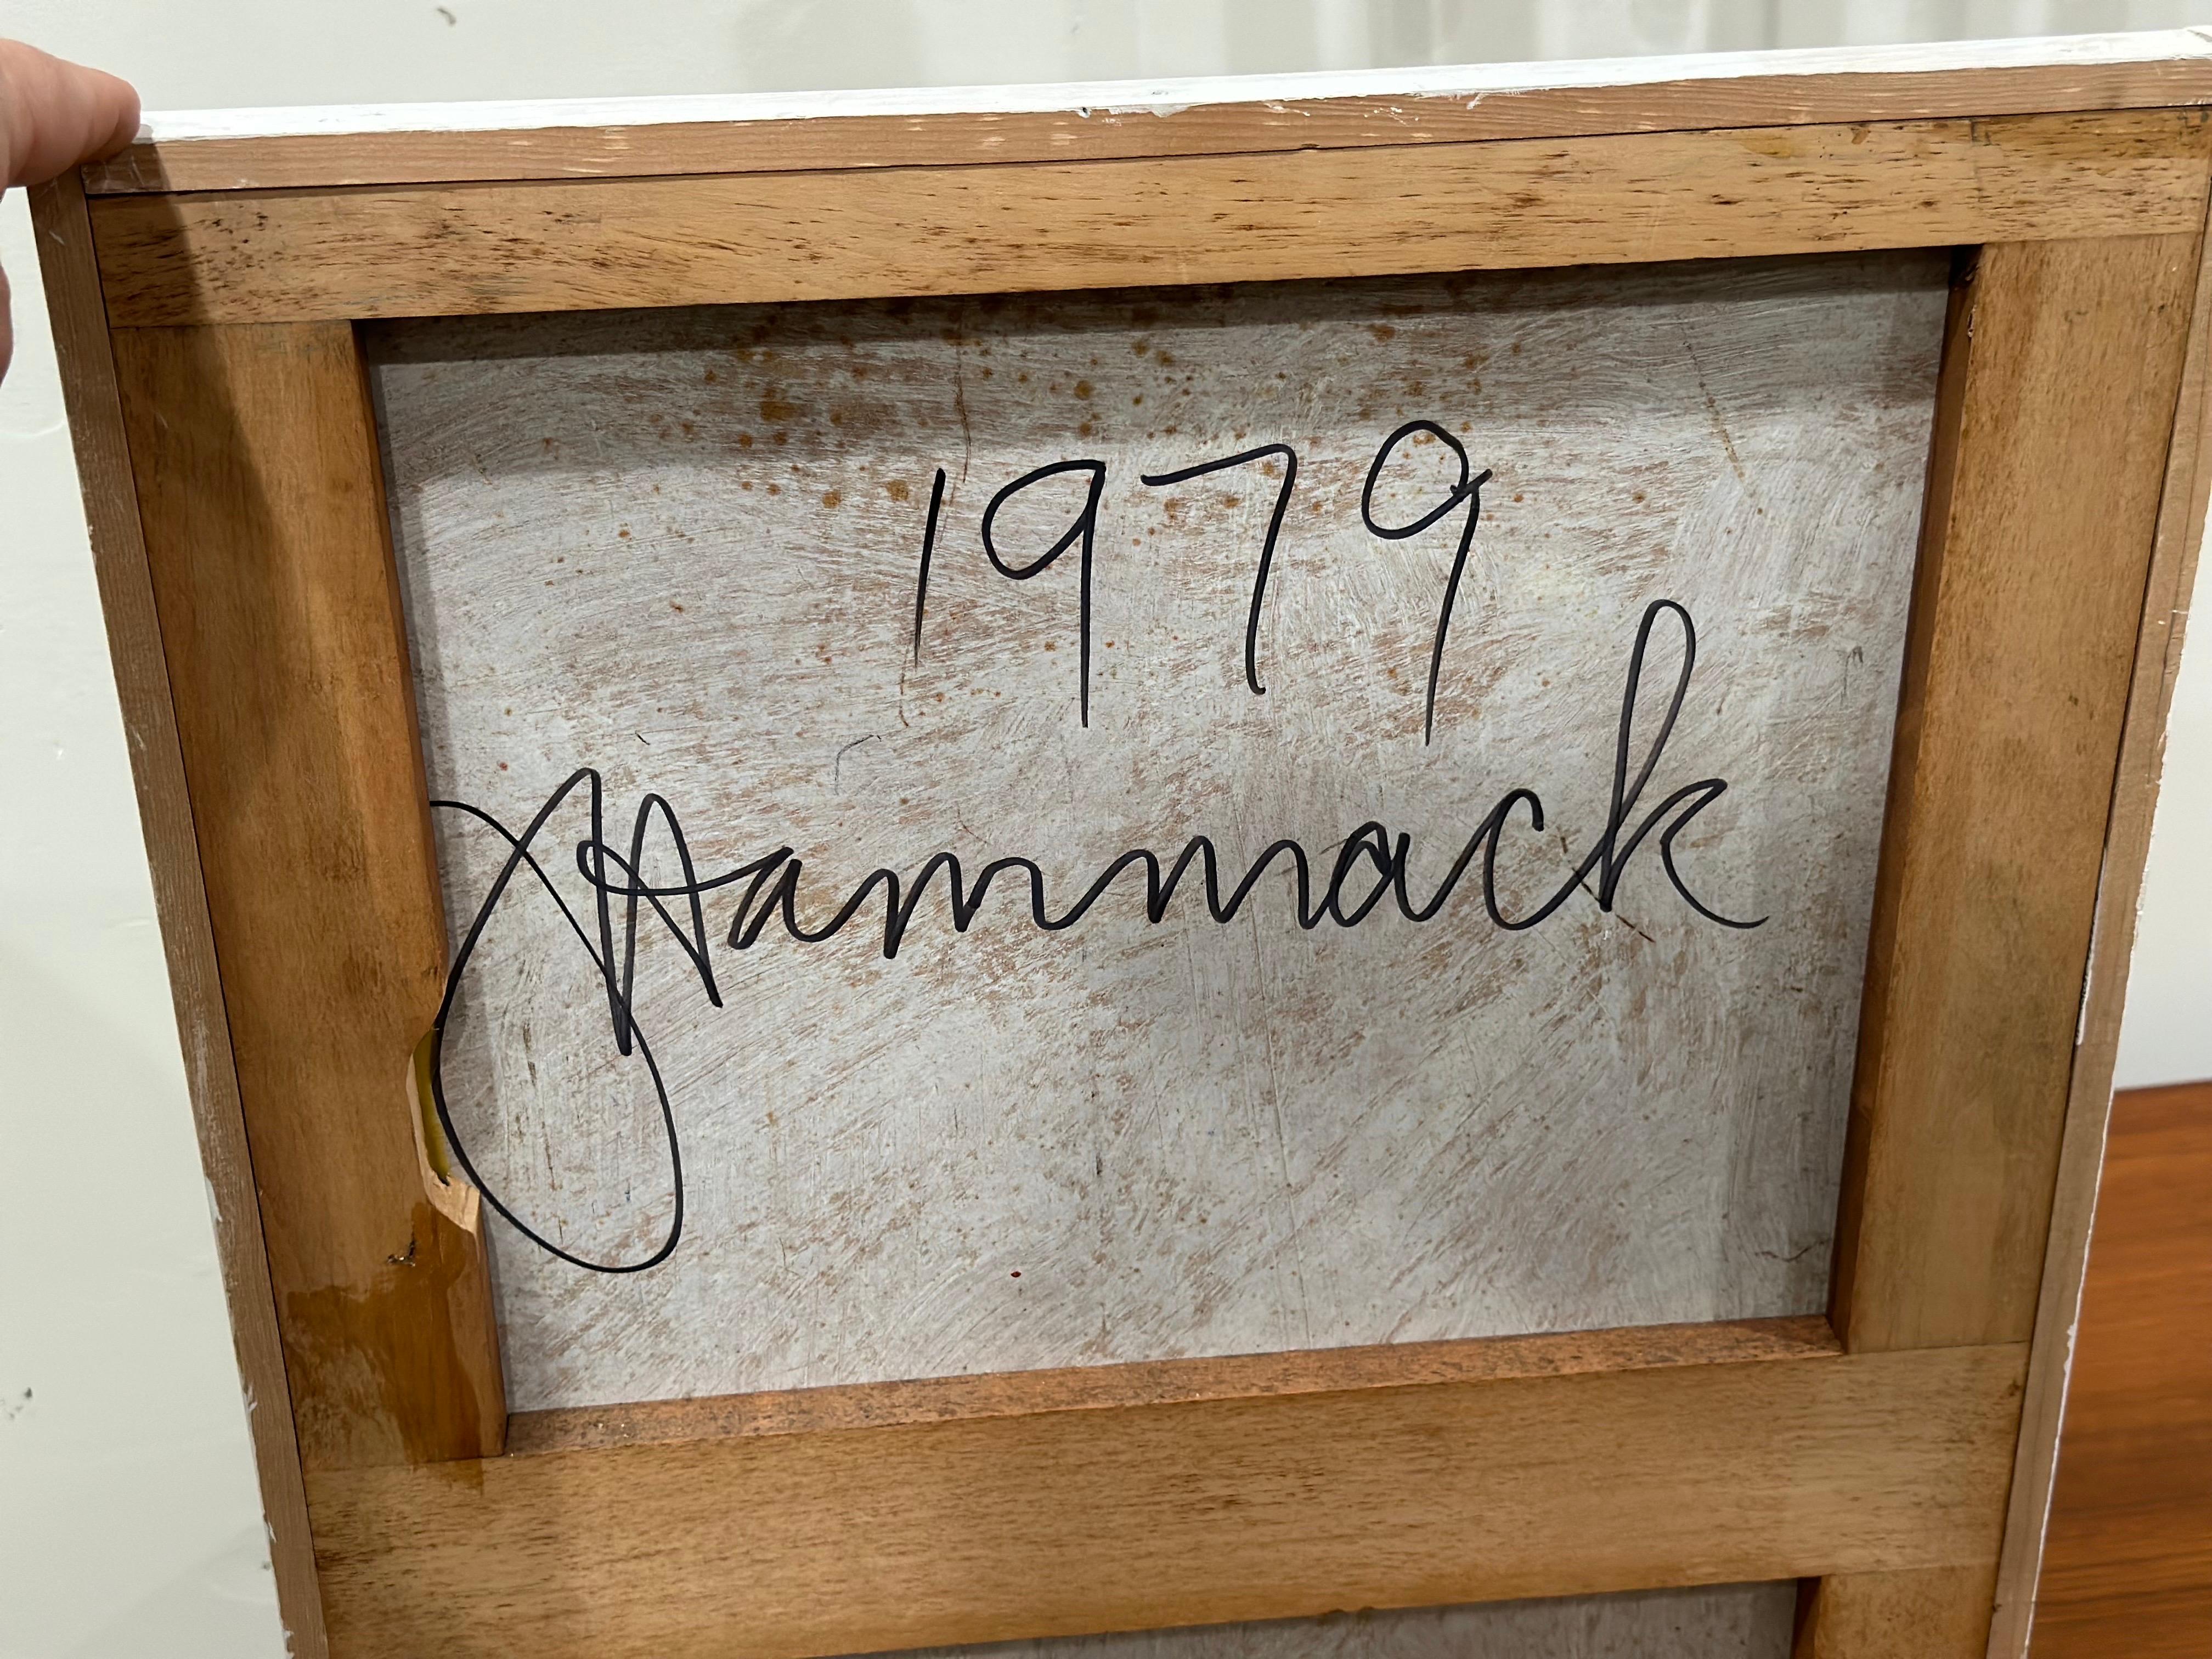 Neoimpressionistisches Öl auf Karton von Jack Hammack, New York/Pazifischer Nordwesten

Jacks Werke wurden kürzlich im pazifischen Nordwesten entdeckt, wo er den Rest seines Lebens verbrachte und wo er in den 1950er Jahren von dem bekannten Künstler